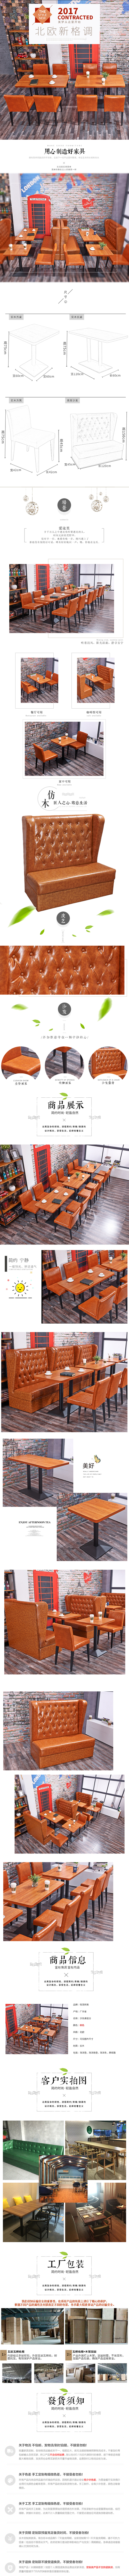 淘宝美工槭子北欧简约家具  桌椅组合，咖啡厅卡座组合作品